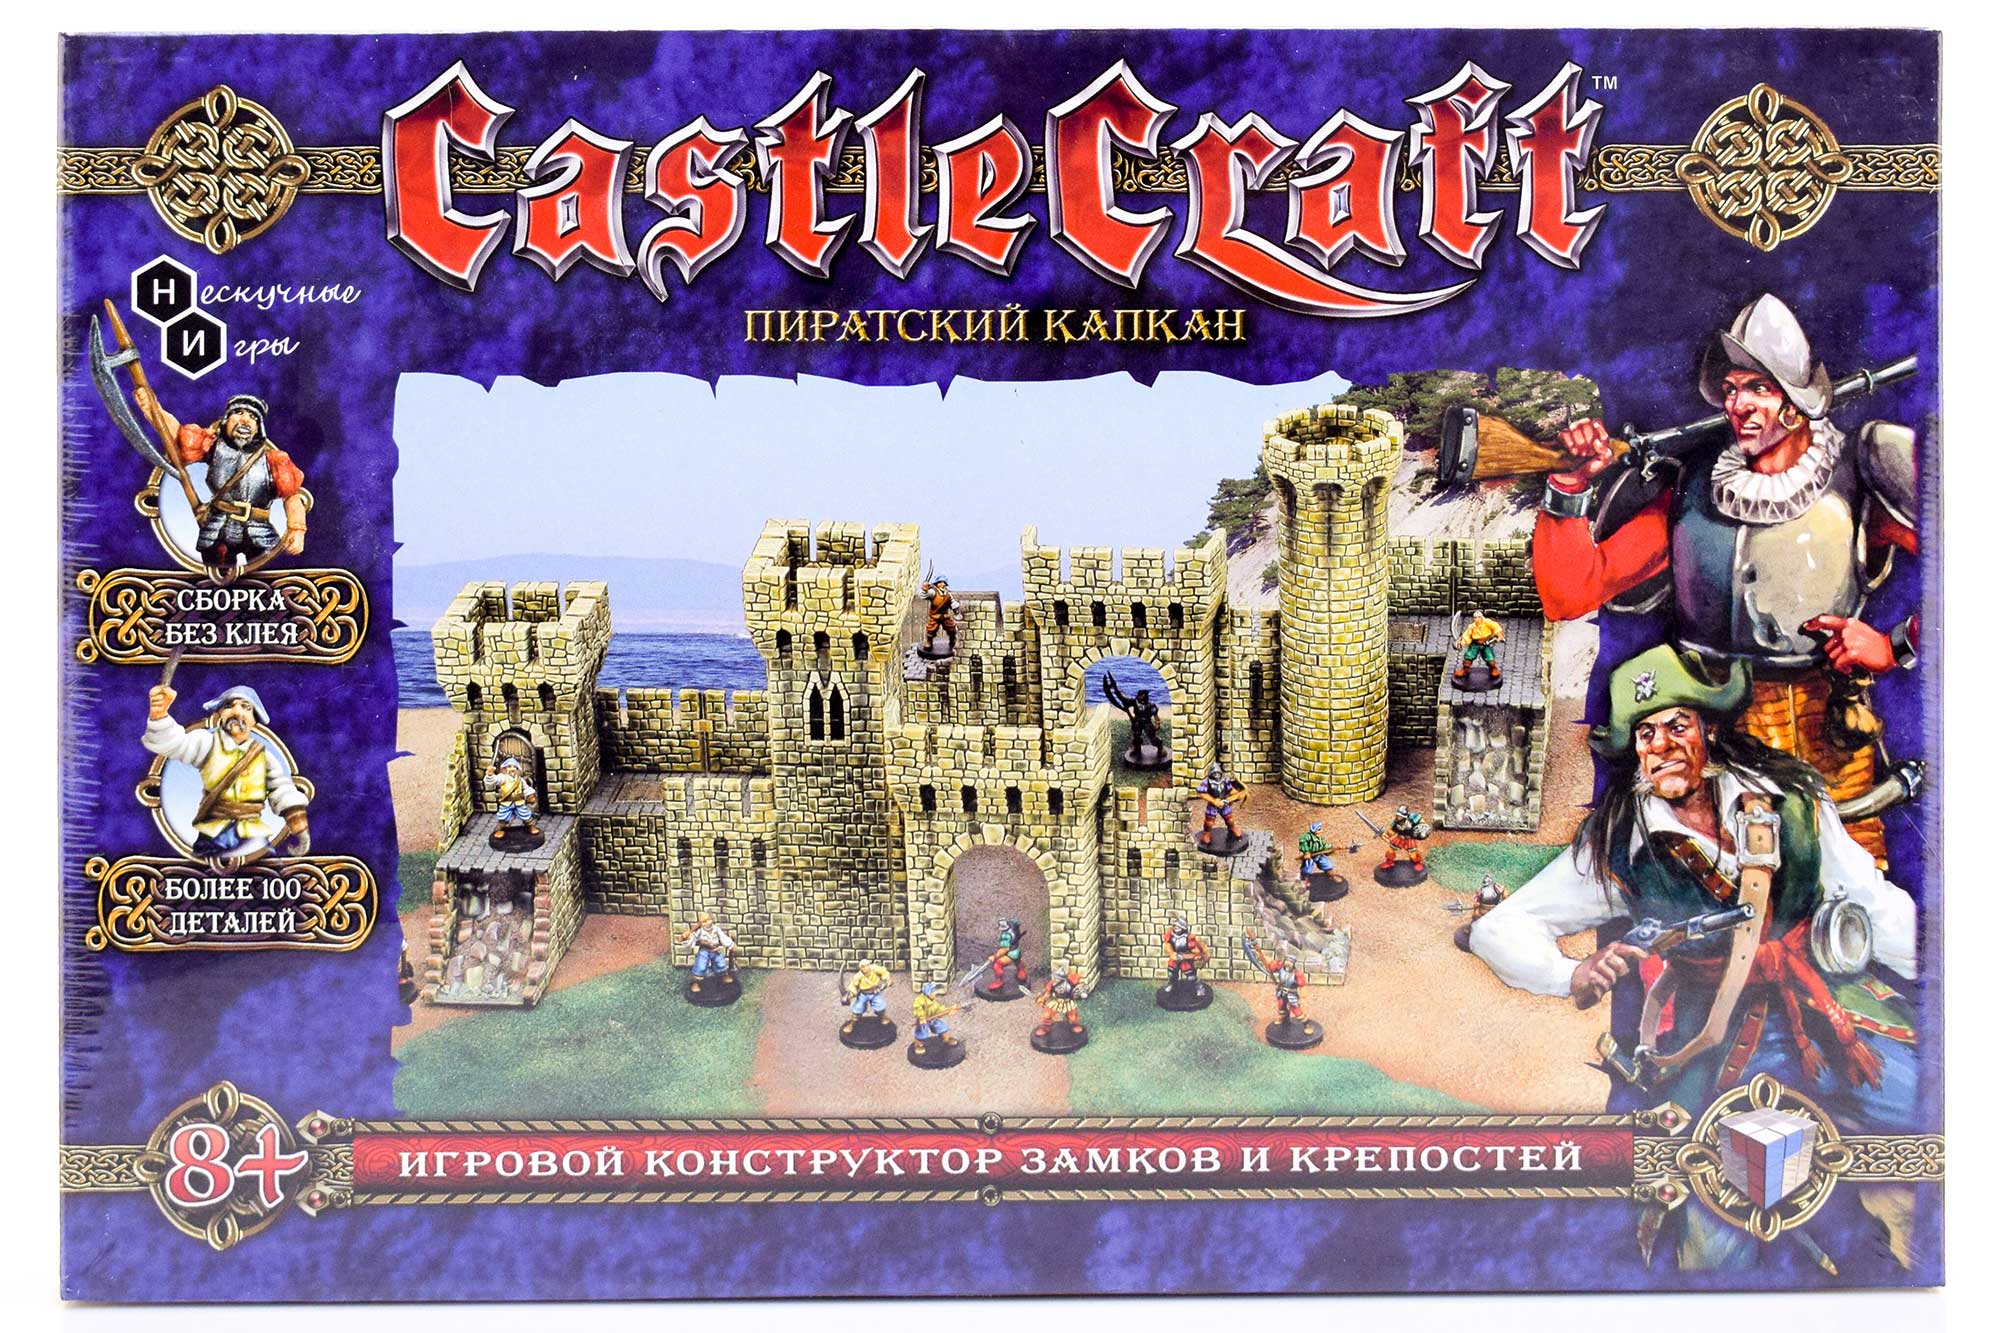 Набор Технолог Castlecraft Пиратский капкан крепость арт. 00345 /4